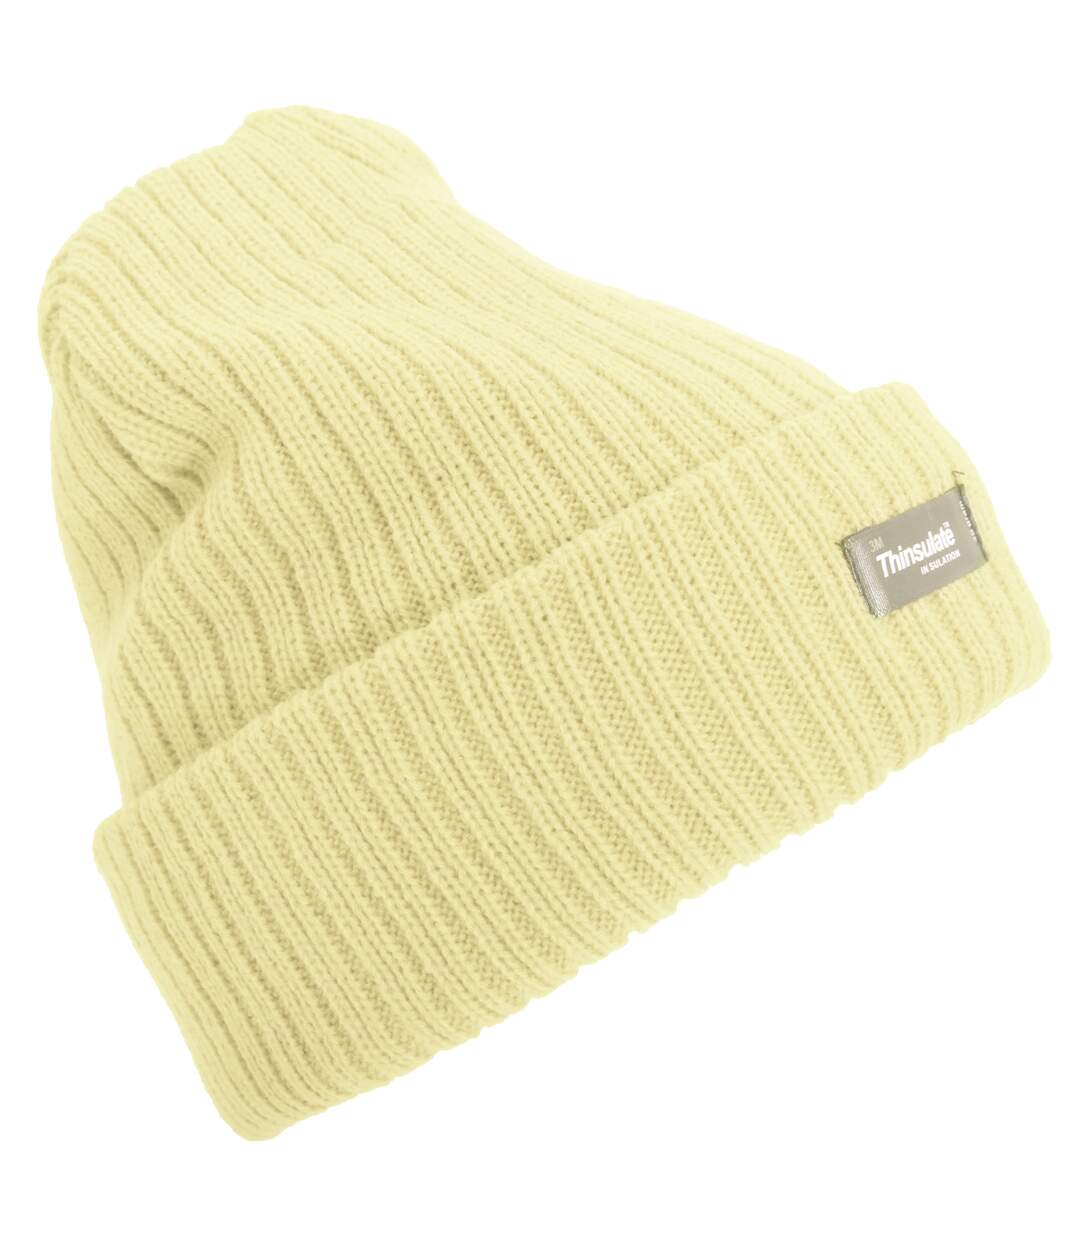 Floso Womens/Ladies Rib Knit Thinsulate Winter Hat (Cream) - UTHA511